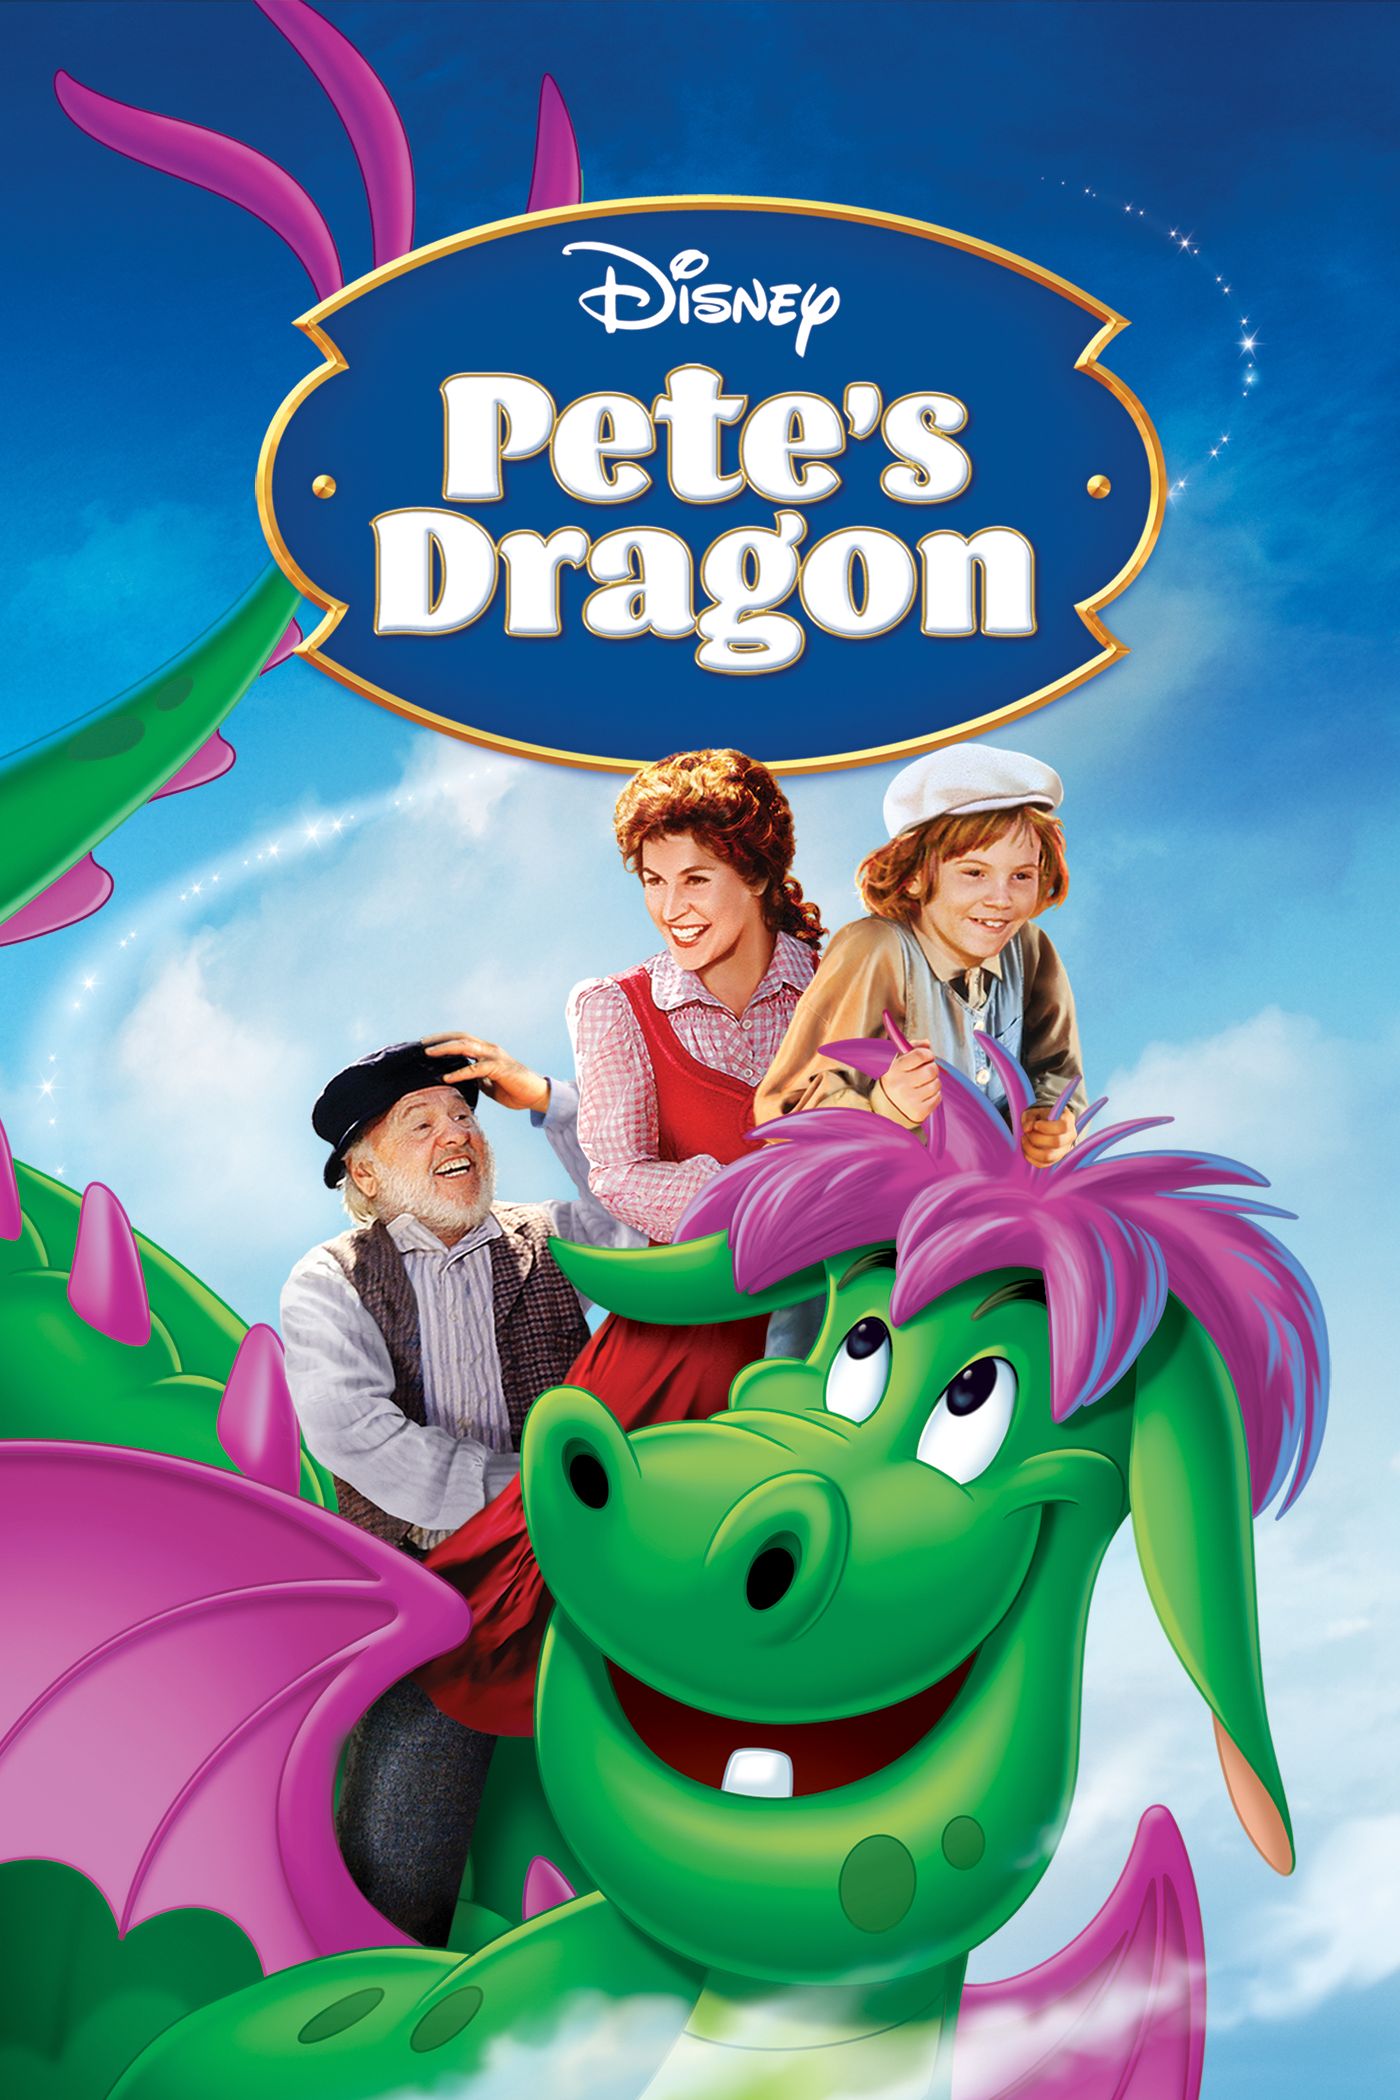 Pete's Dragon movie review: big friendly dragon 